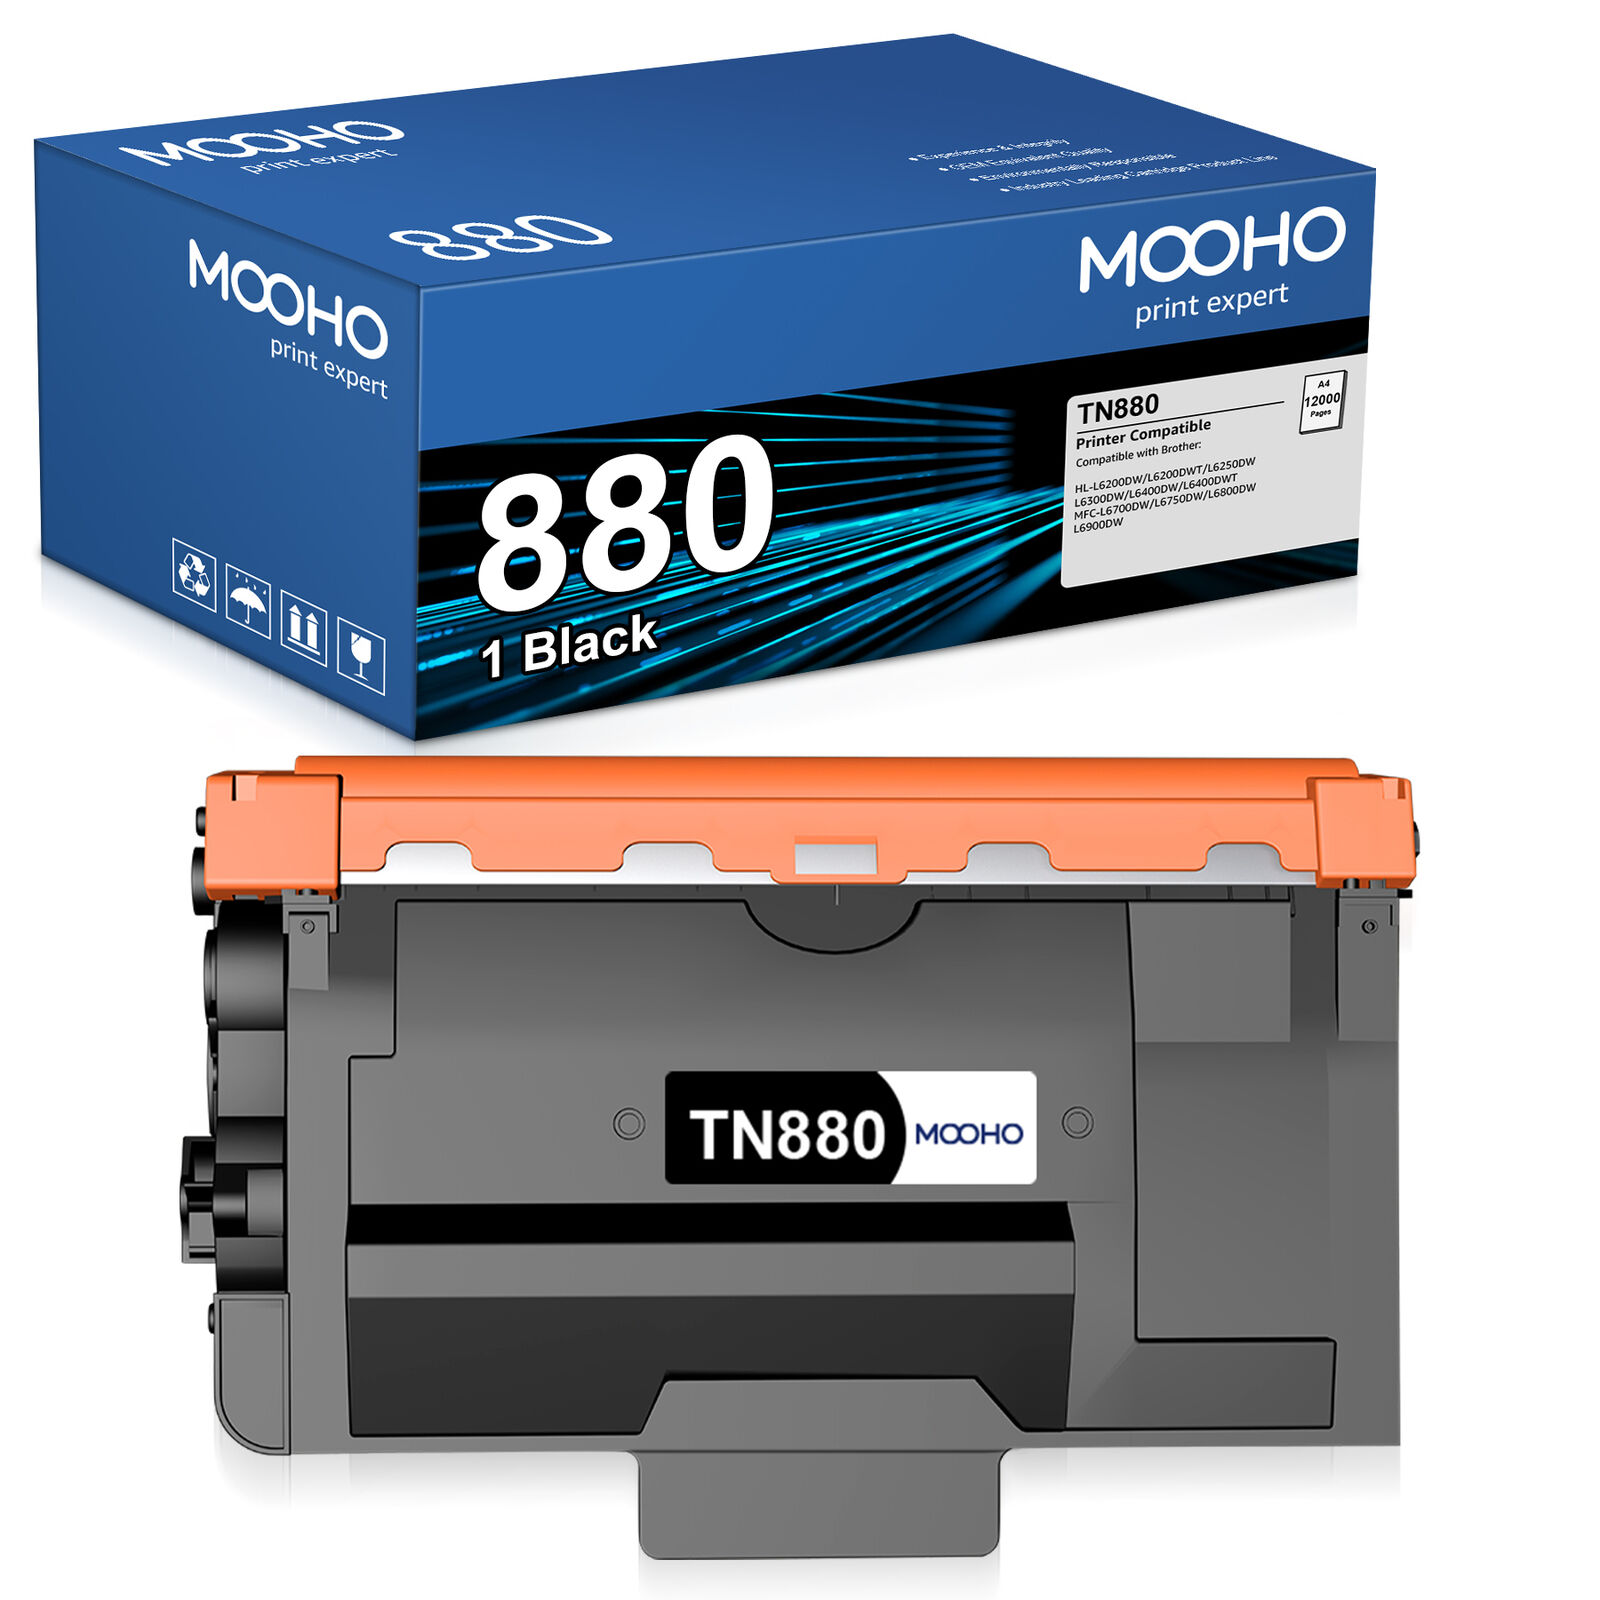 TN880 TN-880 Toner Cartridge for Brother DCP-L6600DW HL-L6200DW MFC-L6700DW Lot